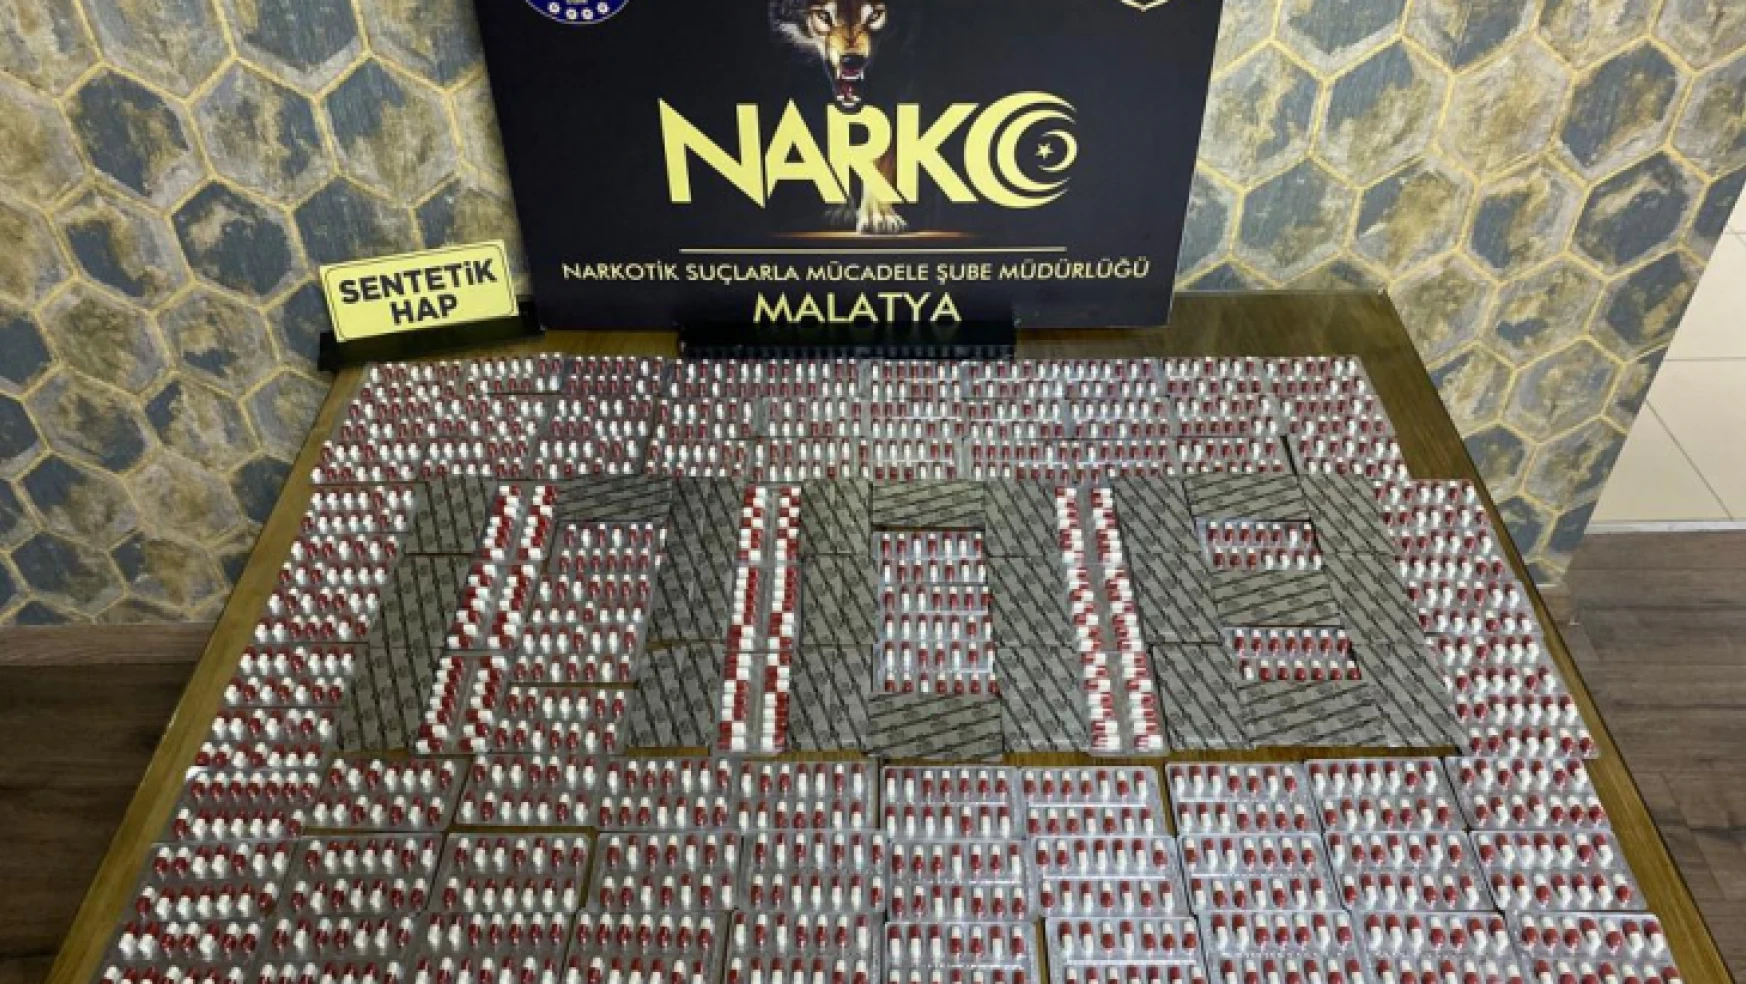 Malatya Narkotik'in 1 haftalık çalışması